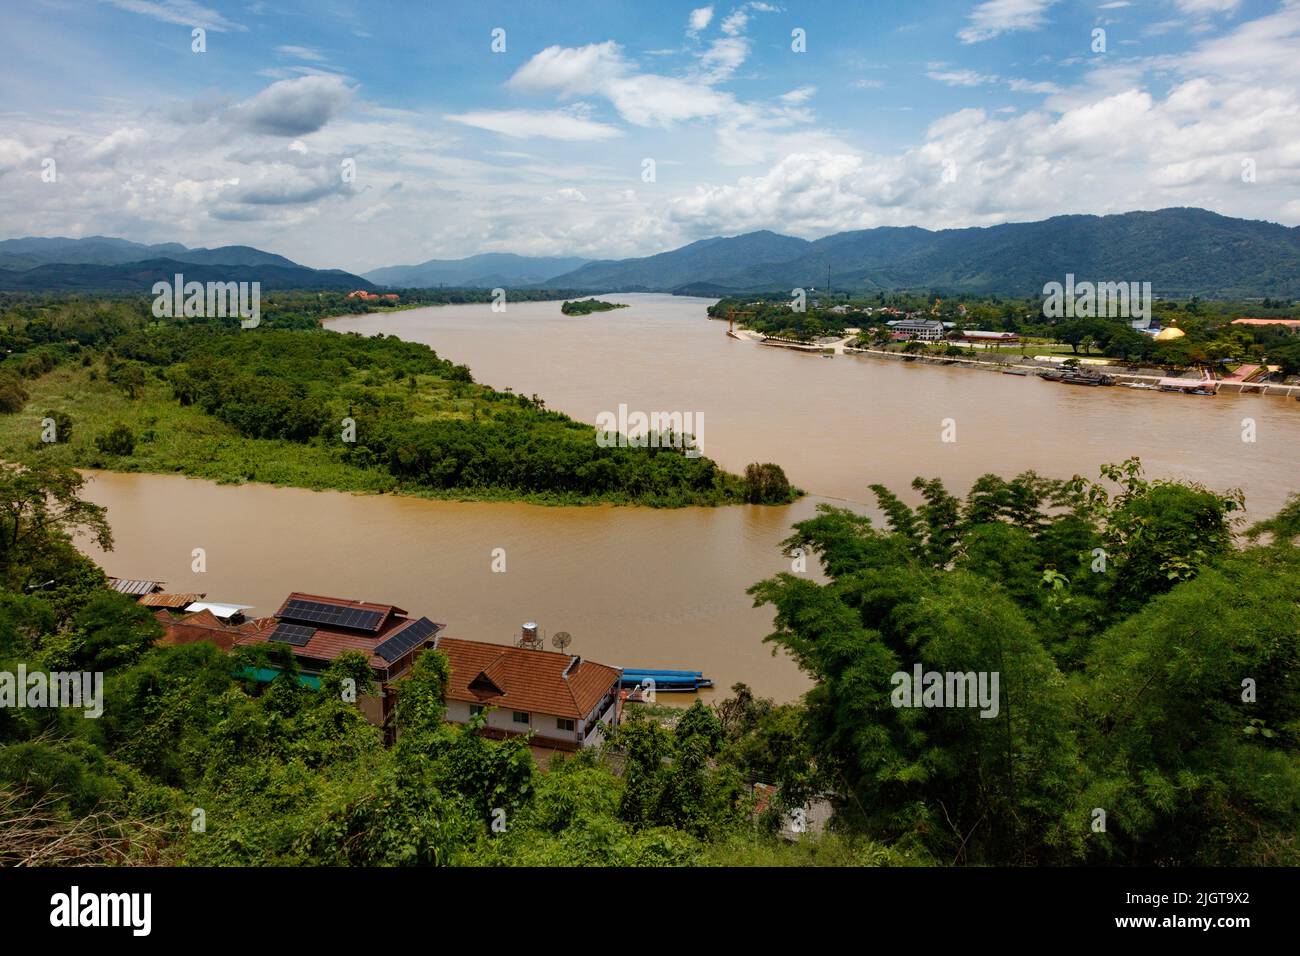 Im GOLDENEN DREIECK treffen sich Thailand, Burma und Laos am Zusammenfluss der Flüsse Mekong und Ruak - CHIANG SAEN, THAILAND Stockfoto